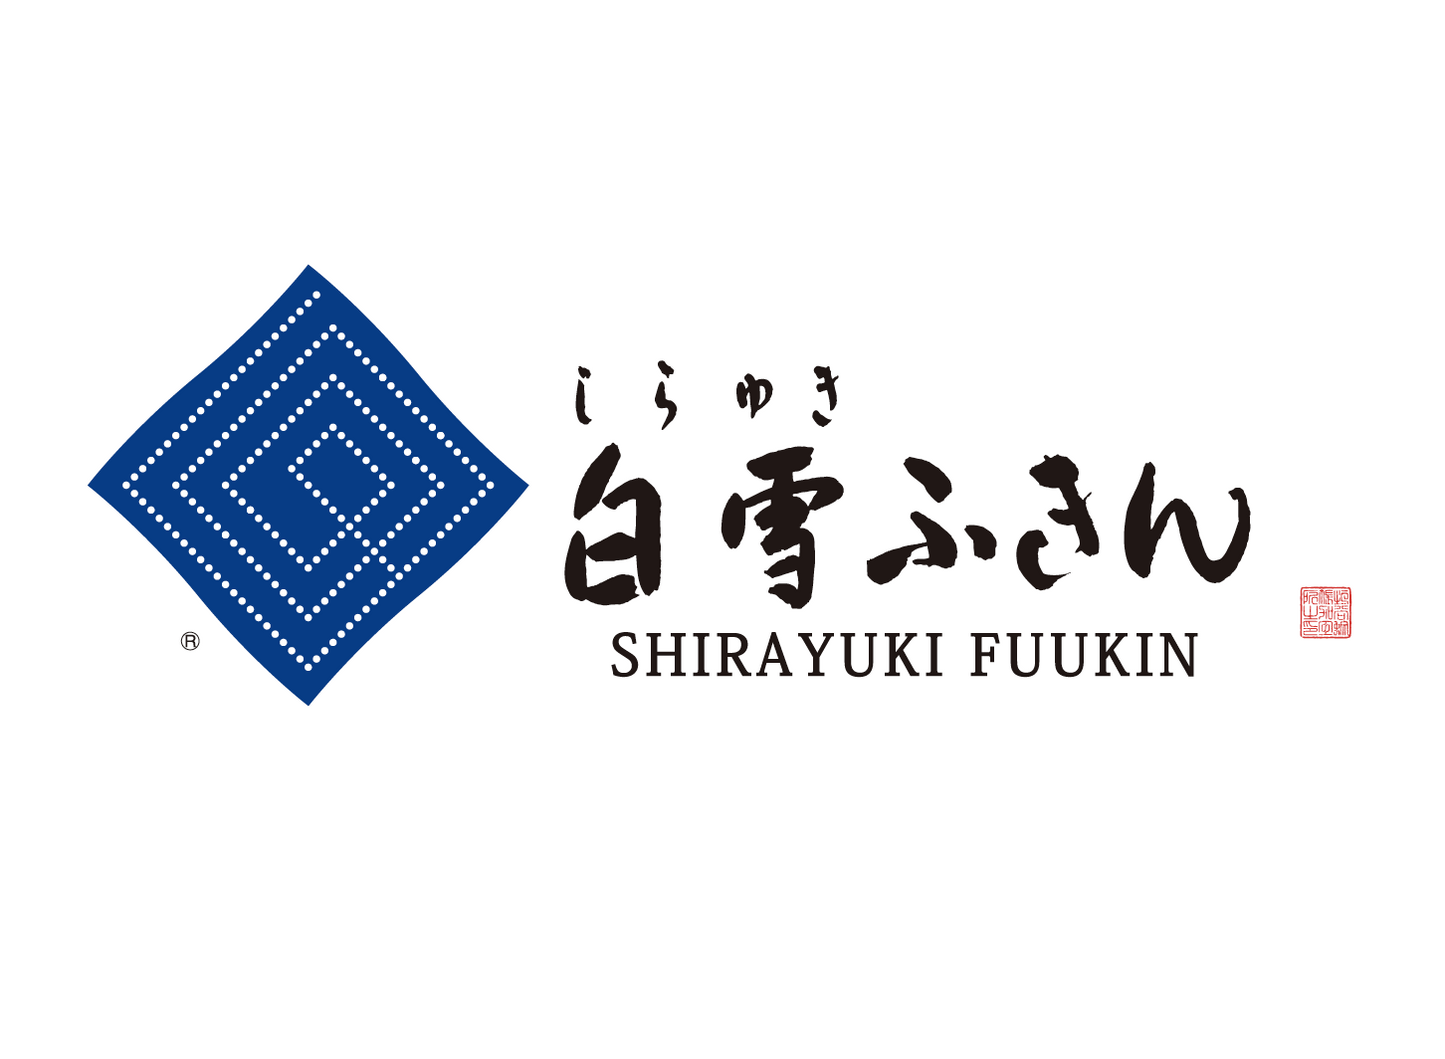 Shirayuki-Yuzen-Fukin Kikubishi  / Rose Orange